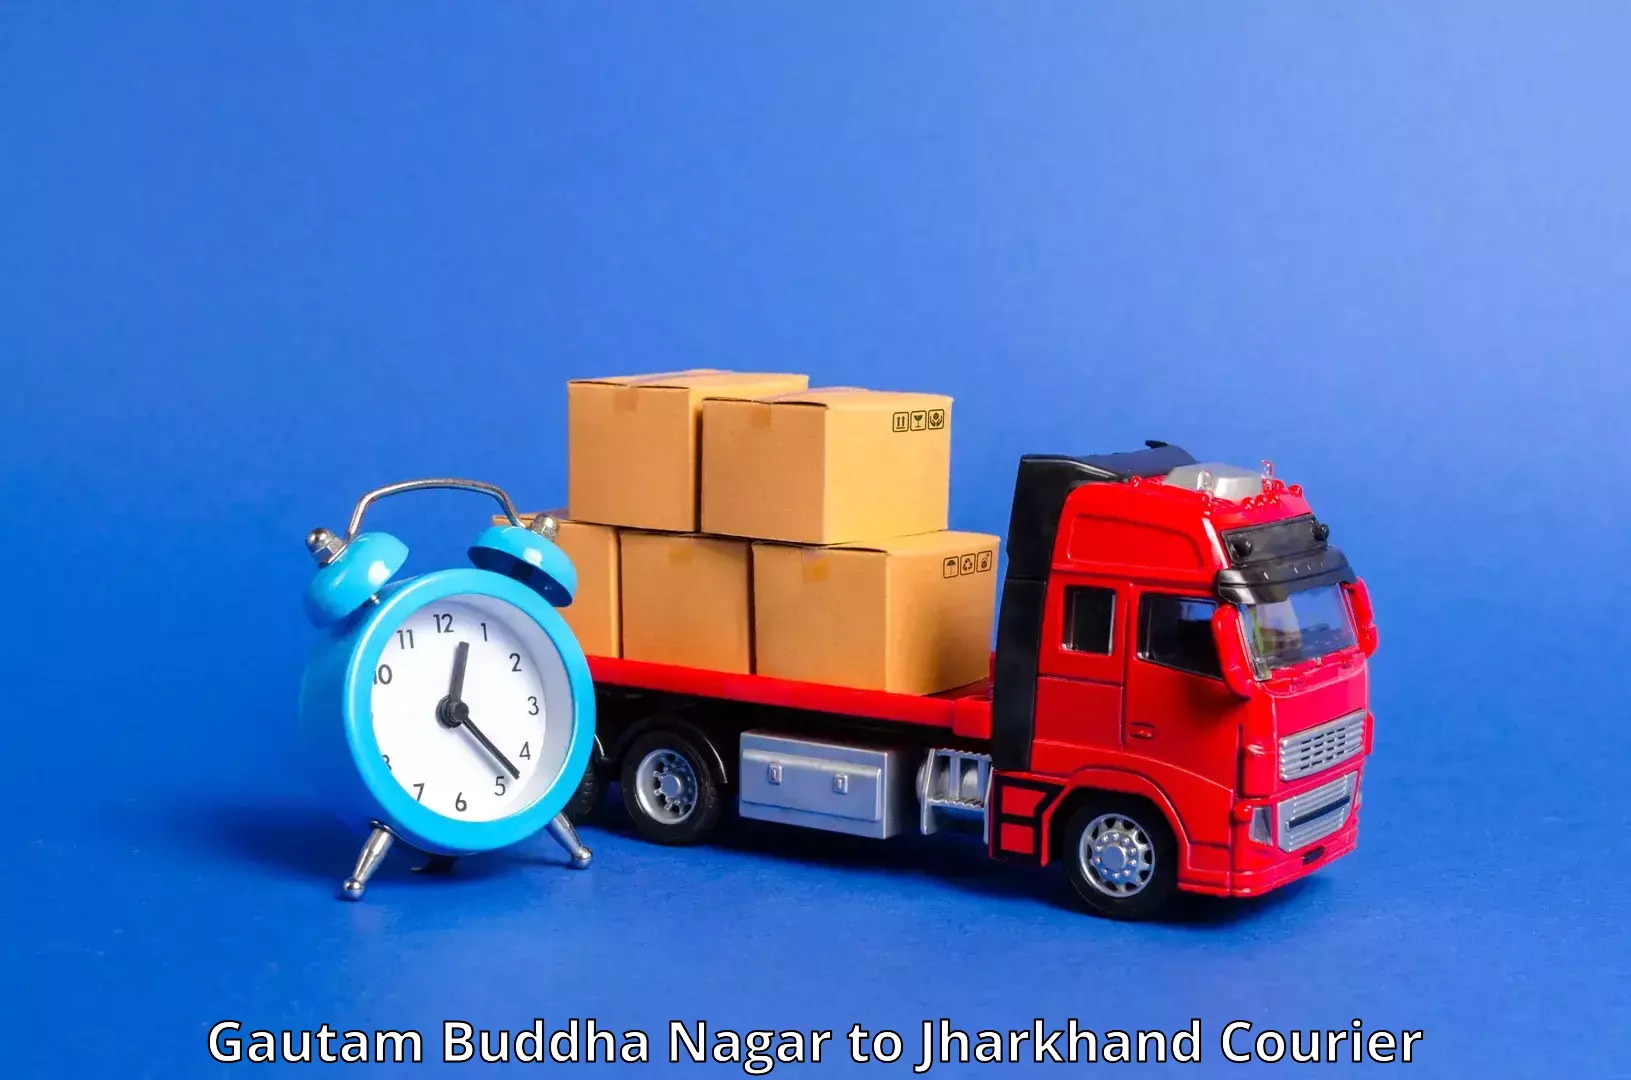 High-speed logistics services Gautam Buddha Nagar to Jharkhand